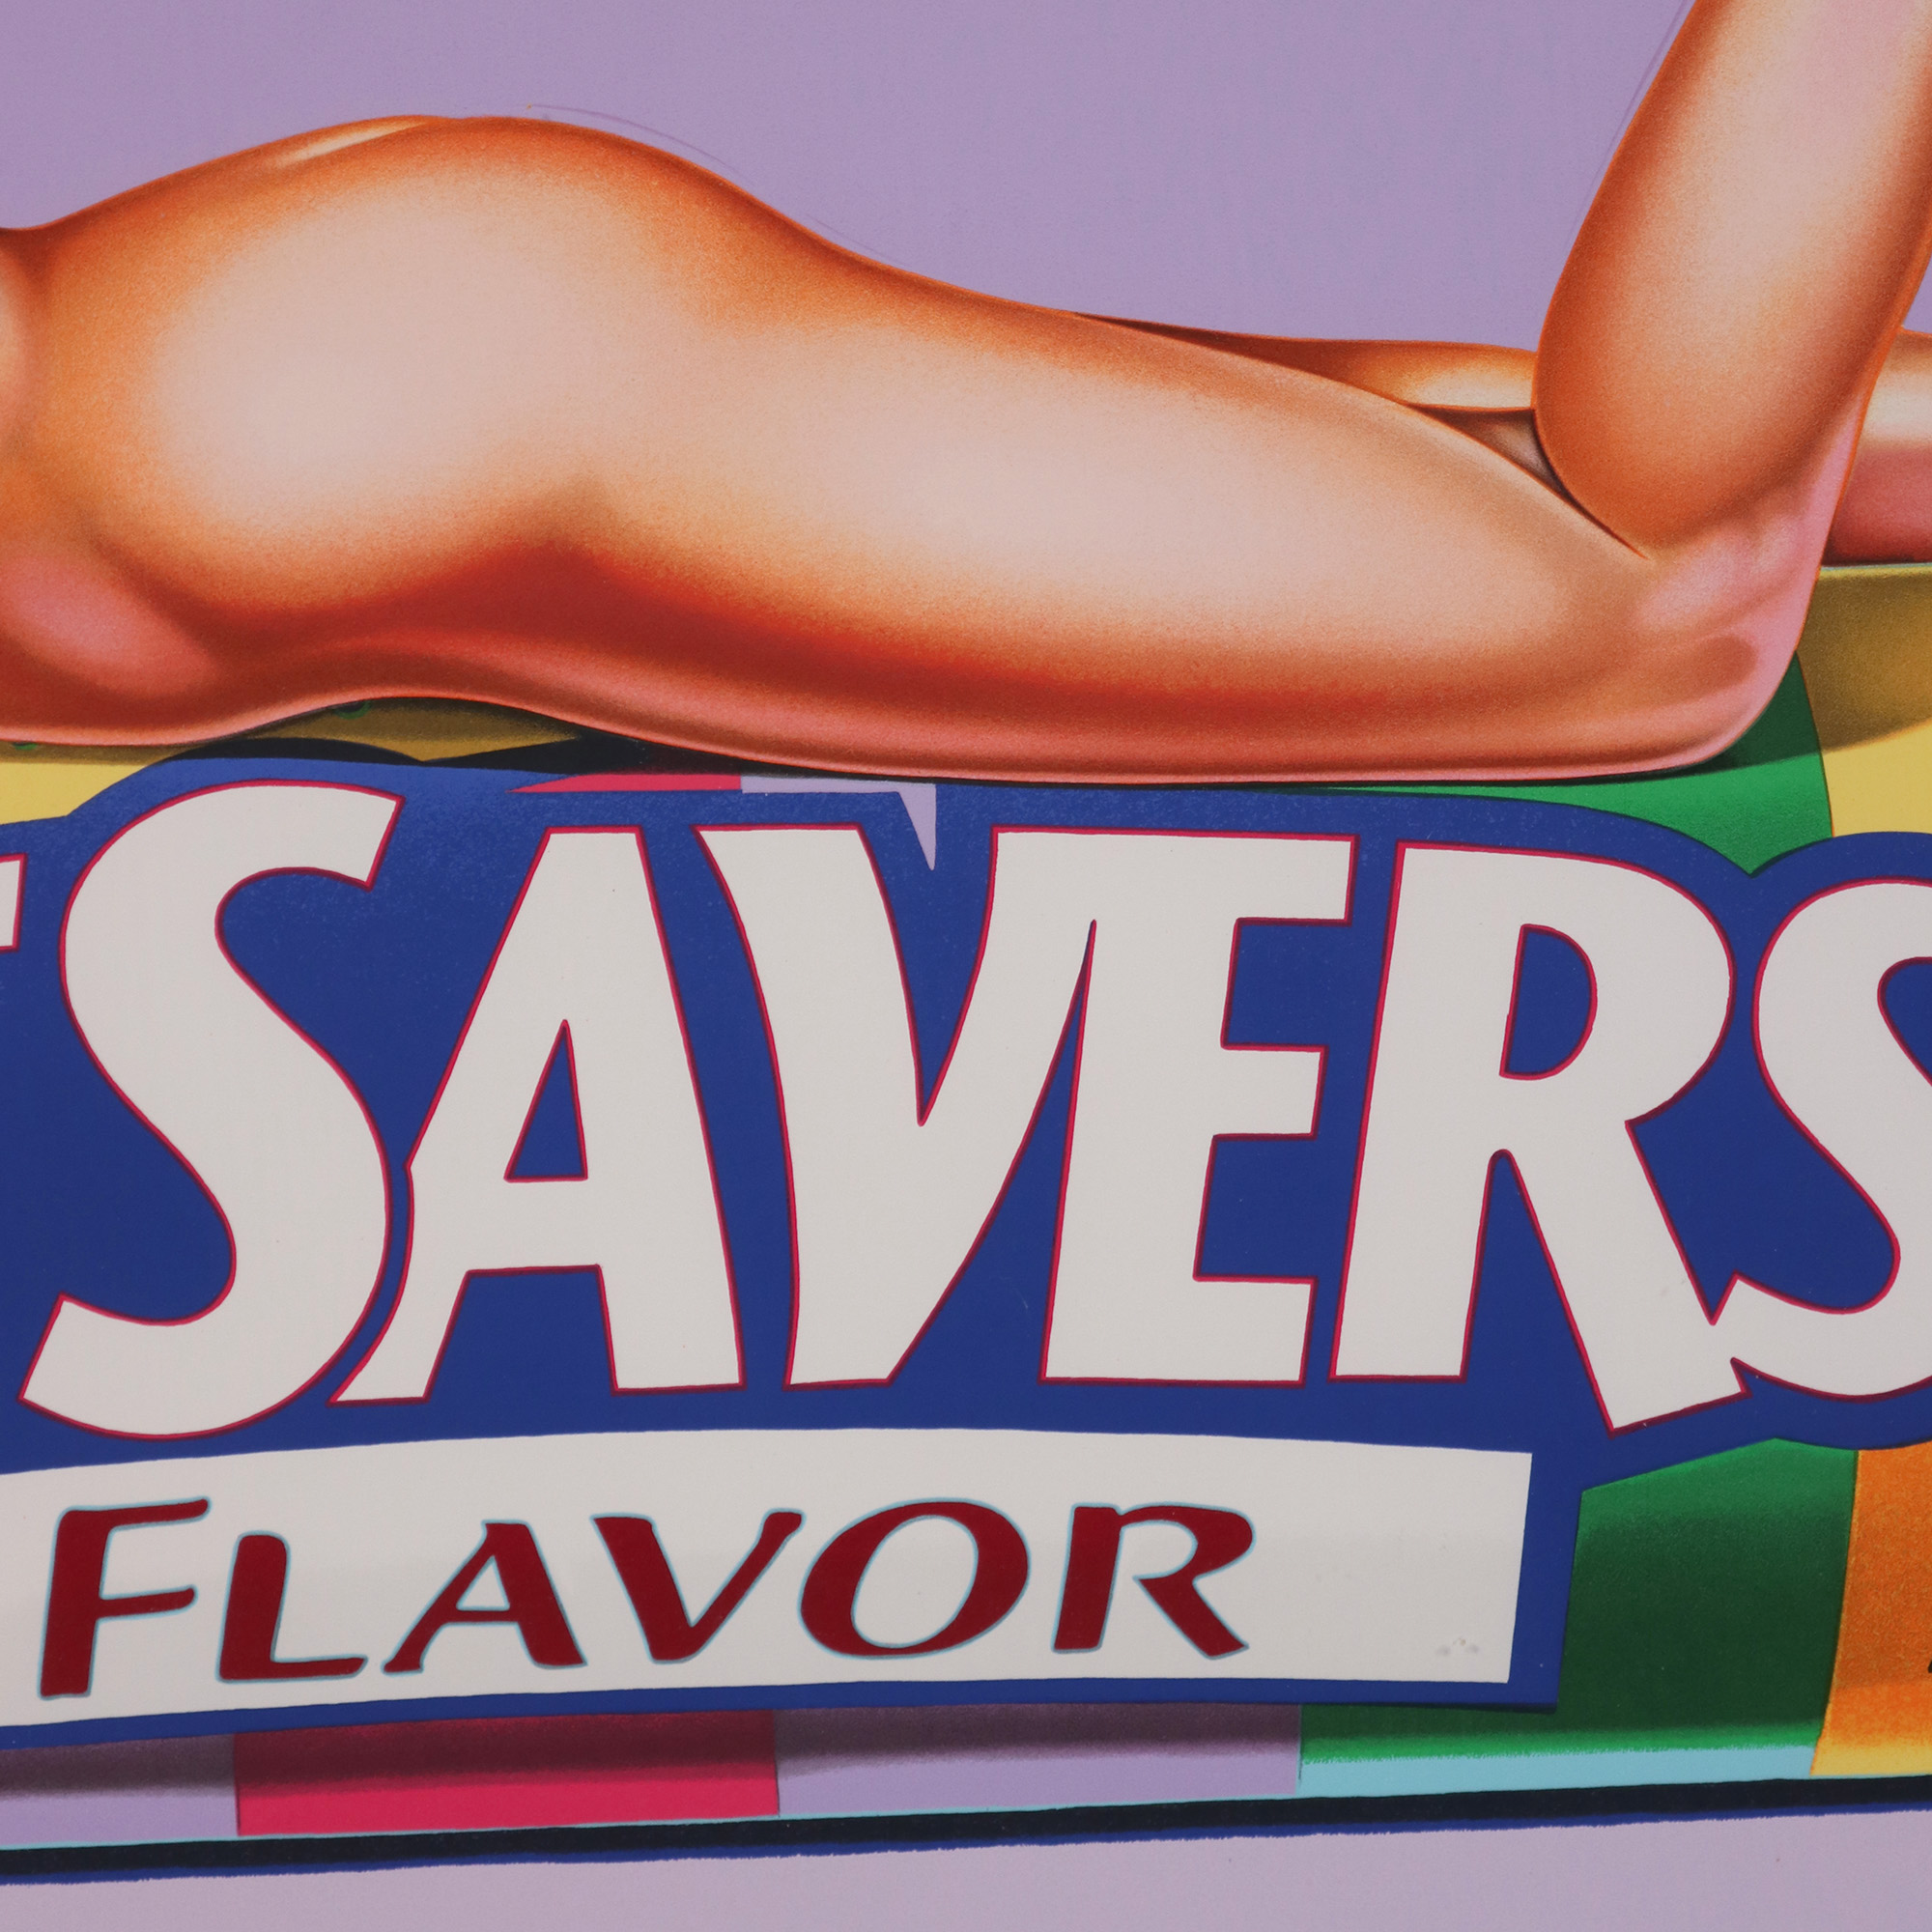 Five Flavour Fannie (Life Savers)